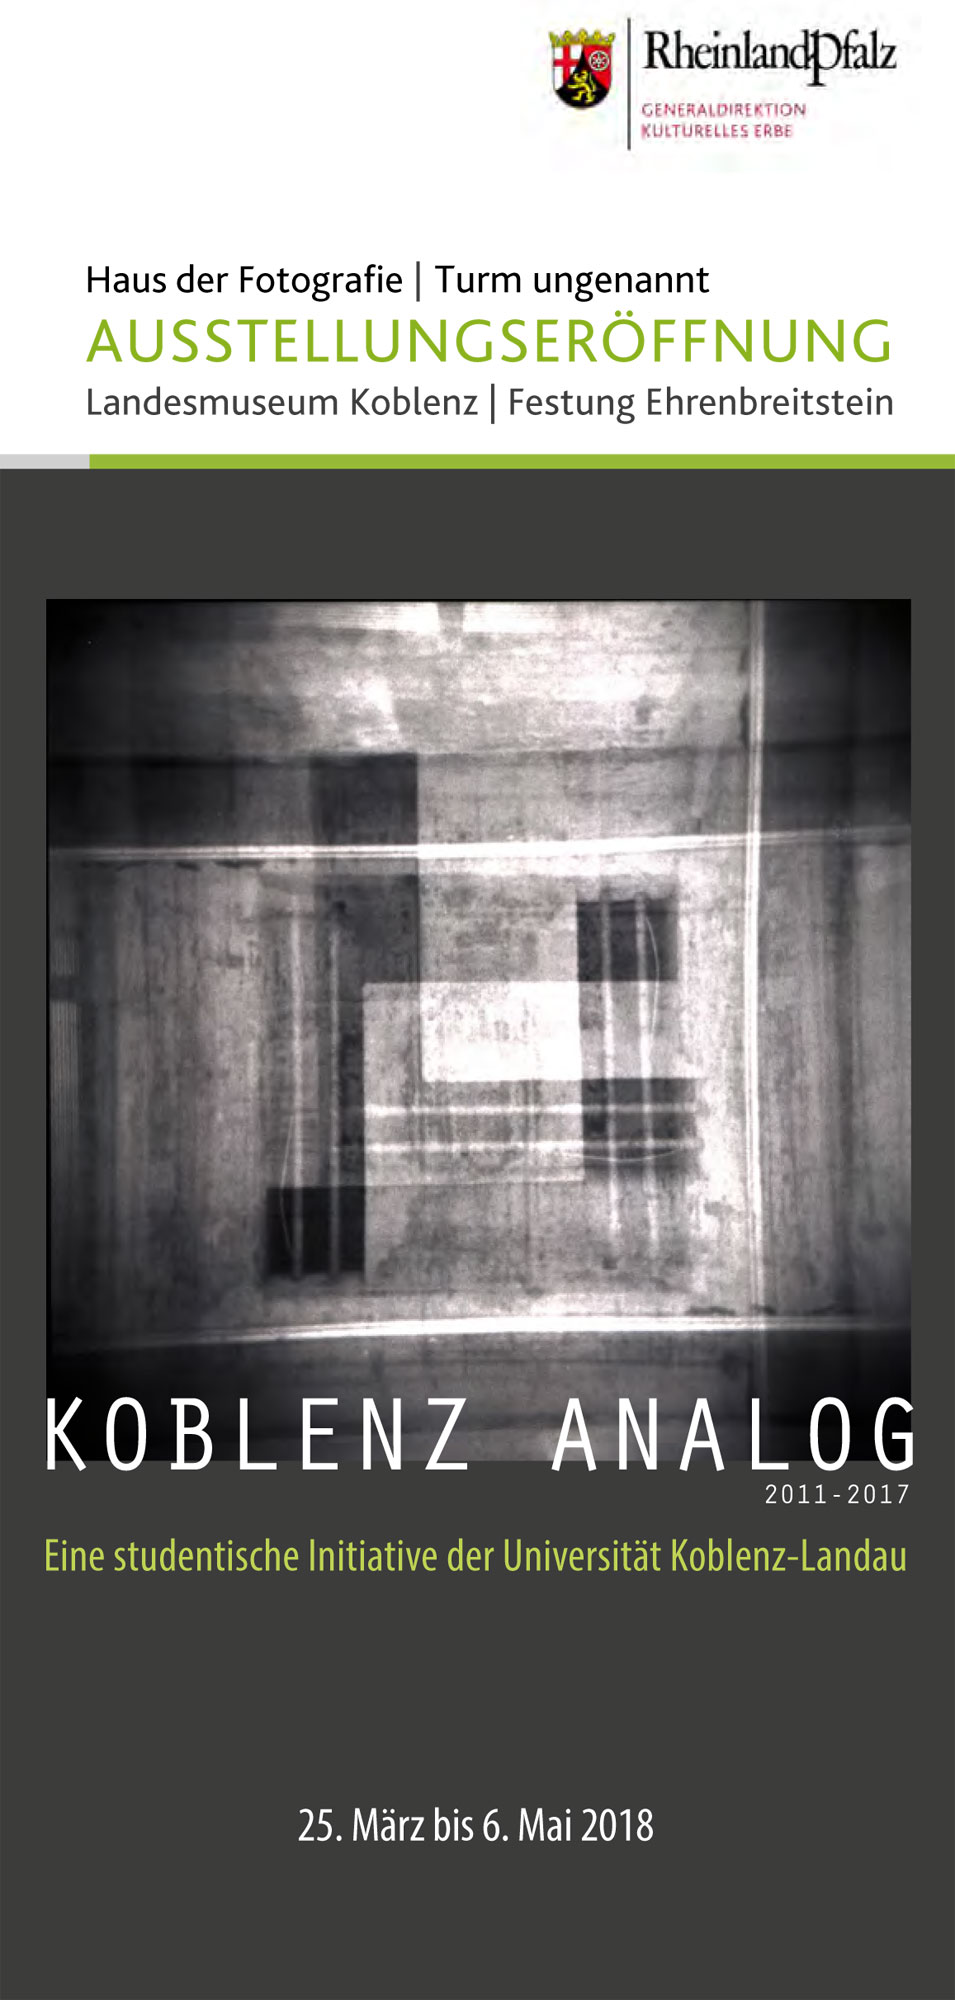 Koblenz Analog im Landesmuseum Koblenz